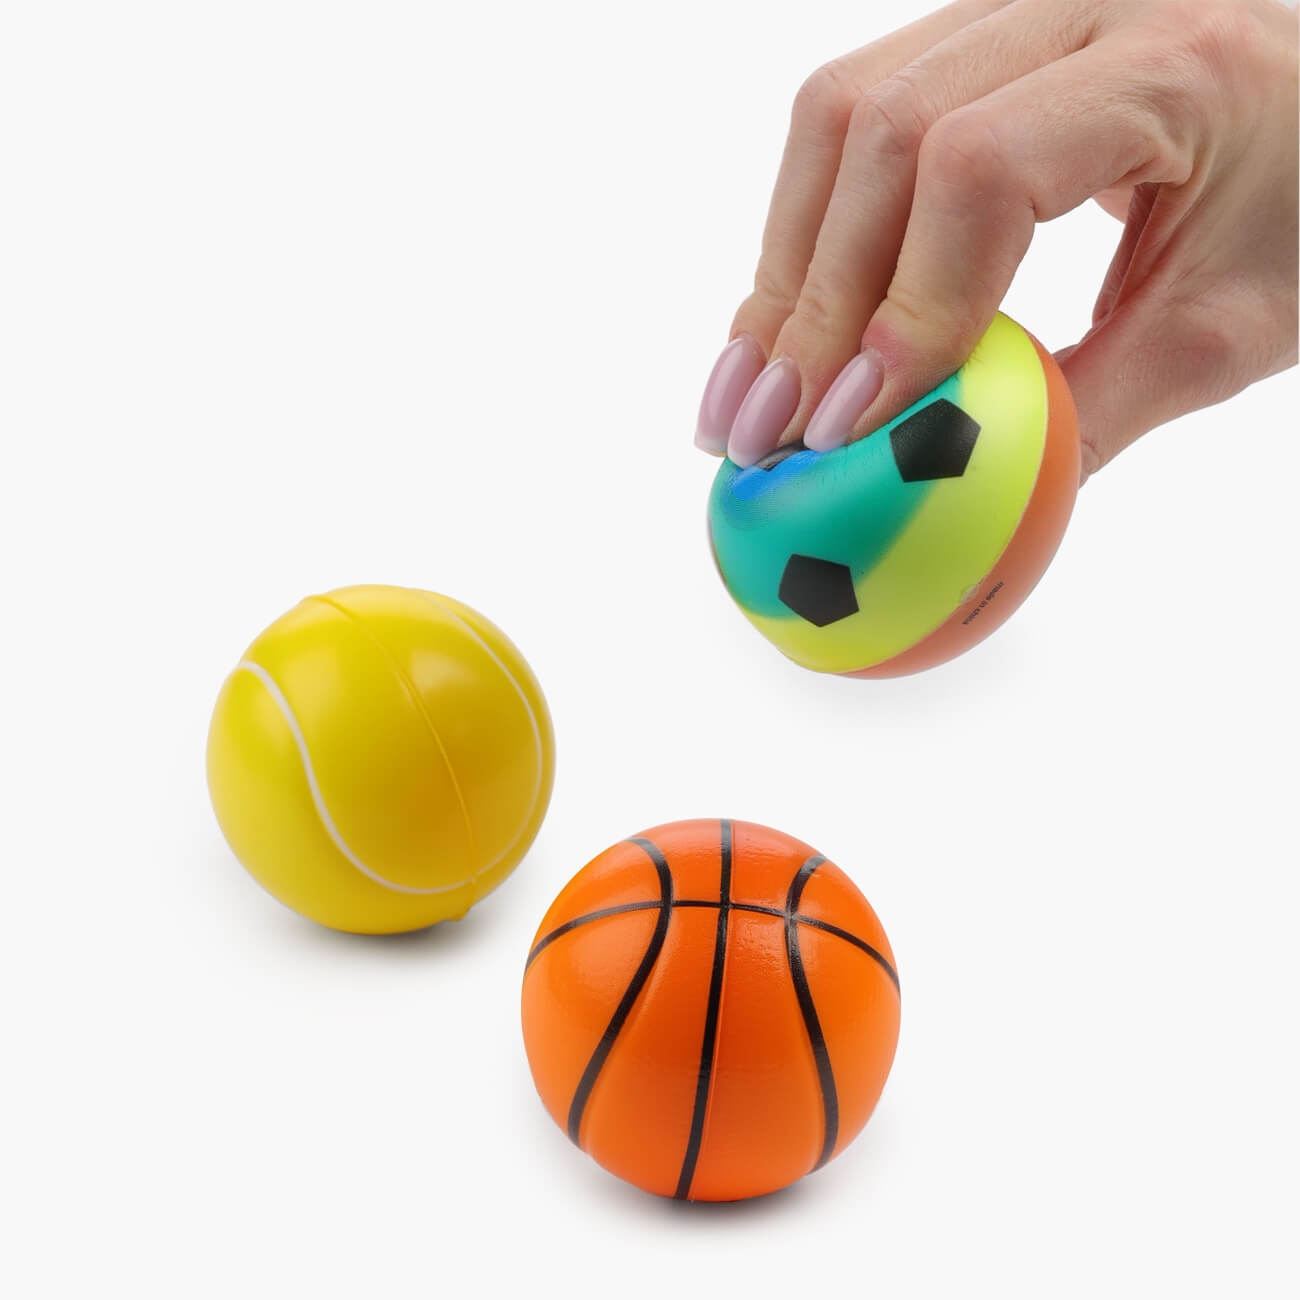 Мяч, 6 см, 3 шт, полиуретан, цветной, Футбол/Баскетбол/Теннис, Game мяч 14 см пвх неоновый баскетбол game neon